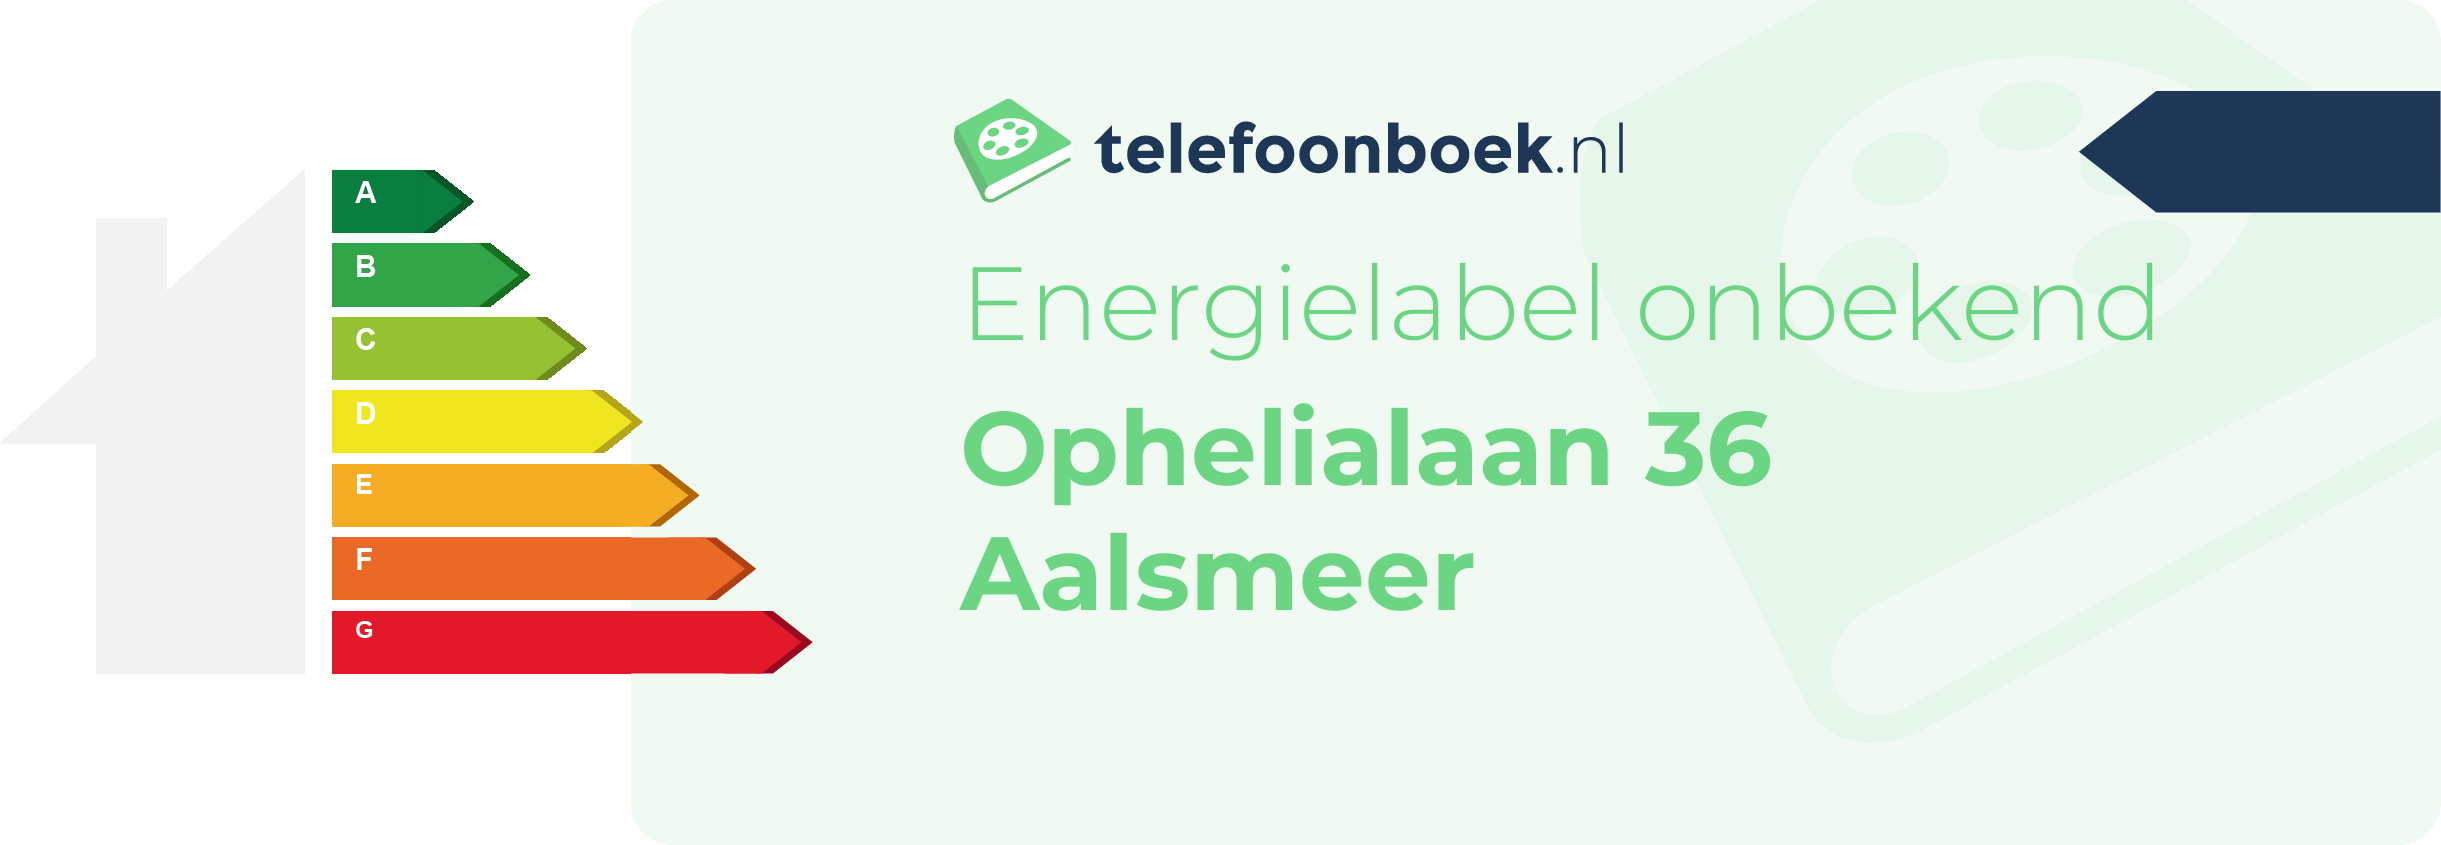 Energielabel Ophelialaan 36 Aalsmeer